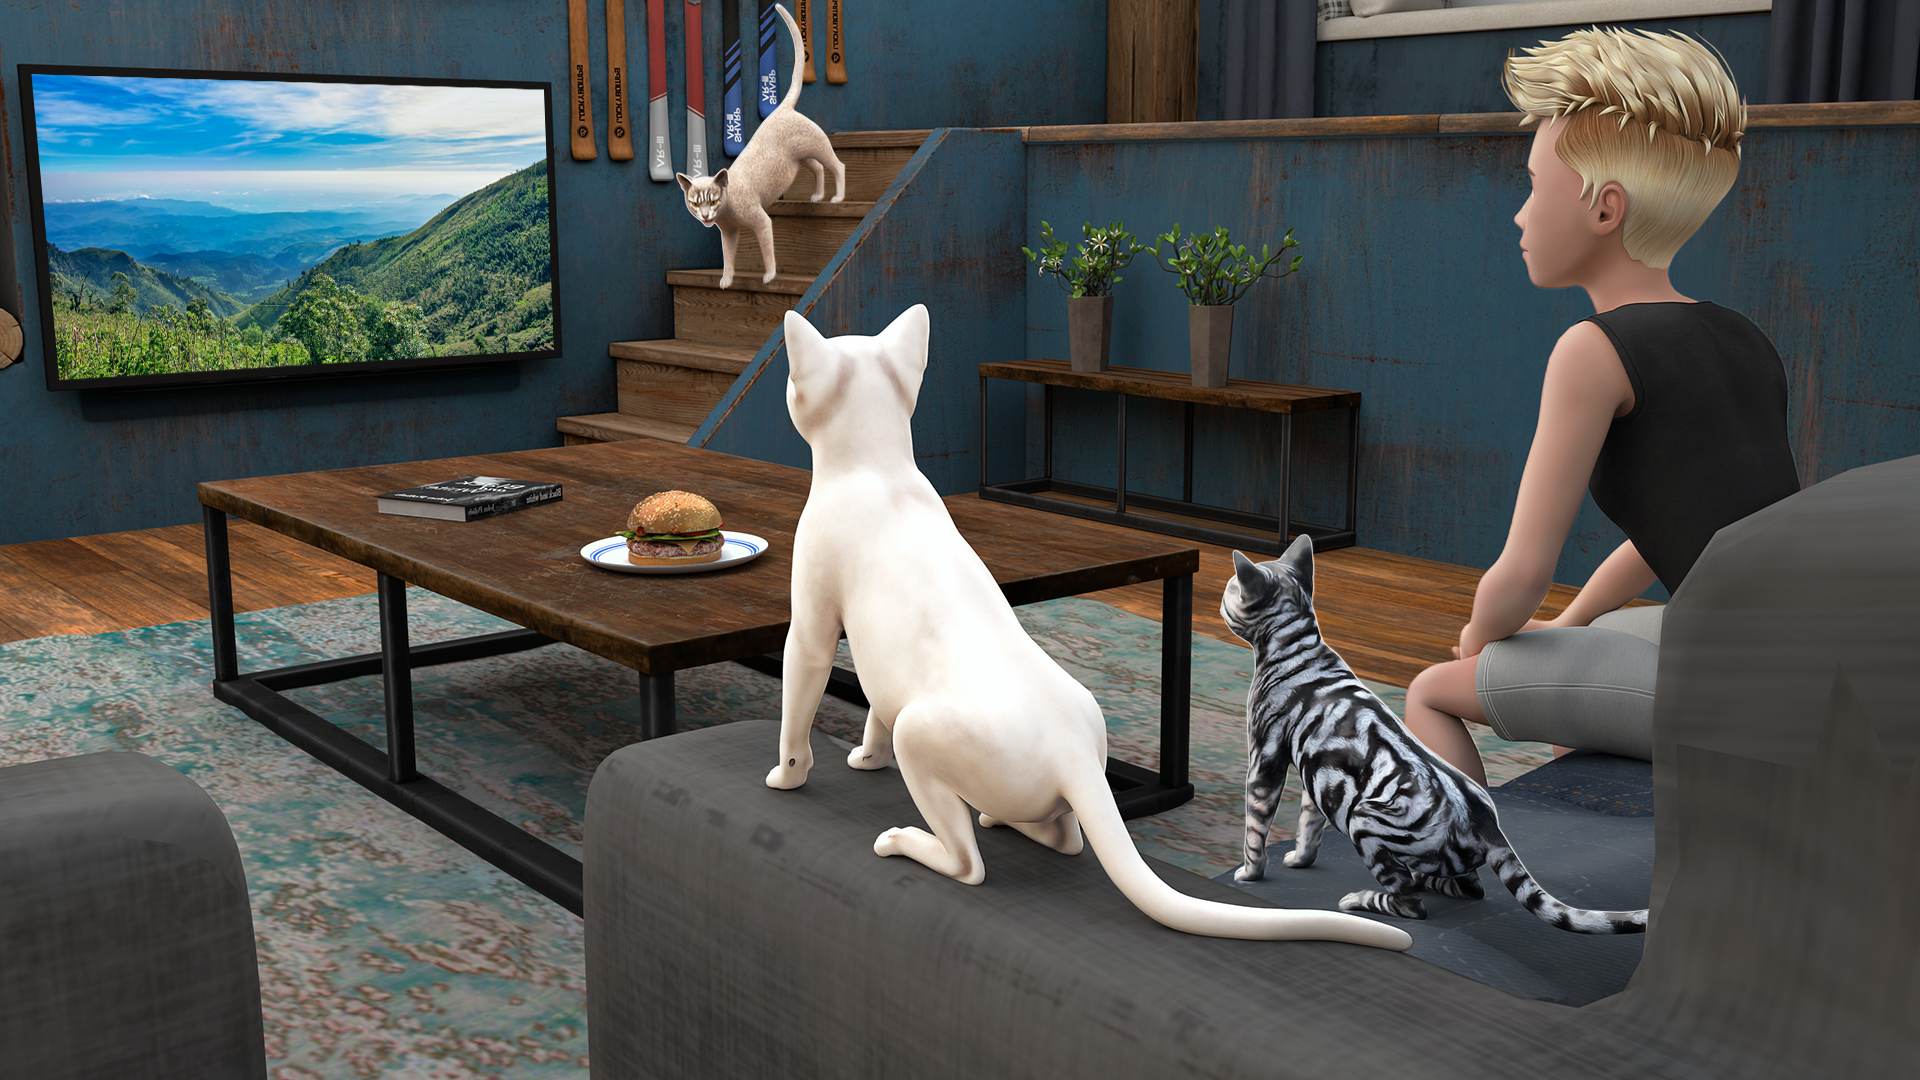 Jogo do gatinho 3d, simulador de gato e cachorro, Virtual Puppy